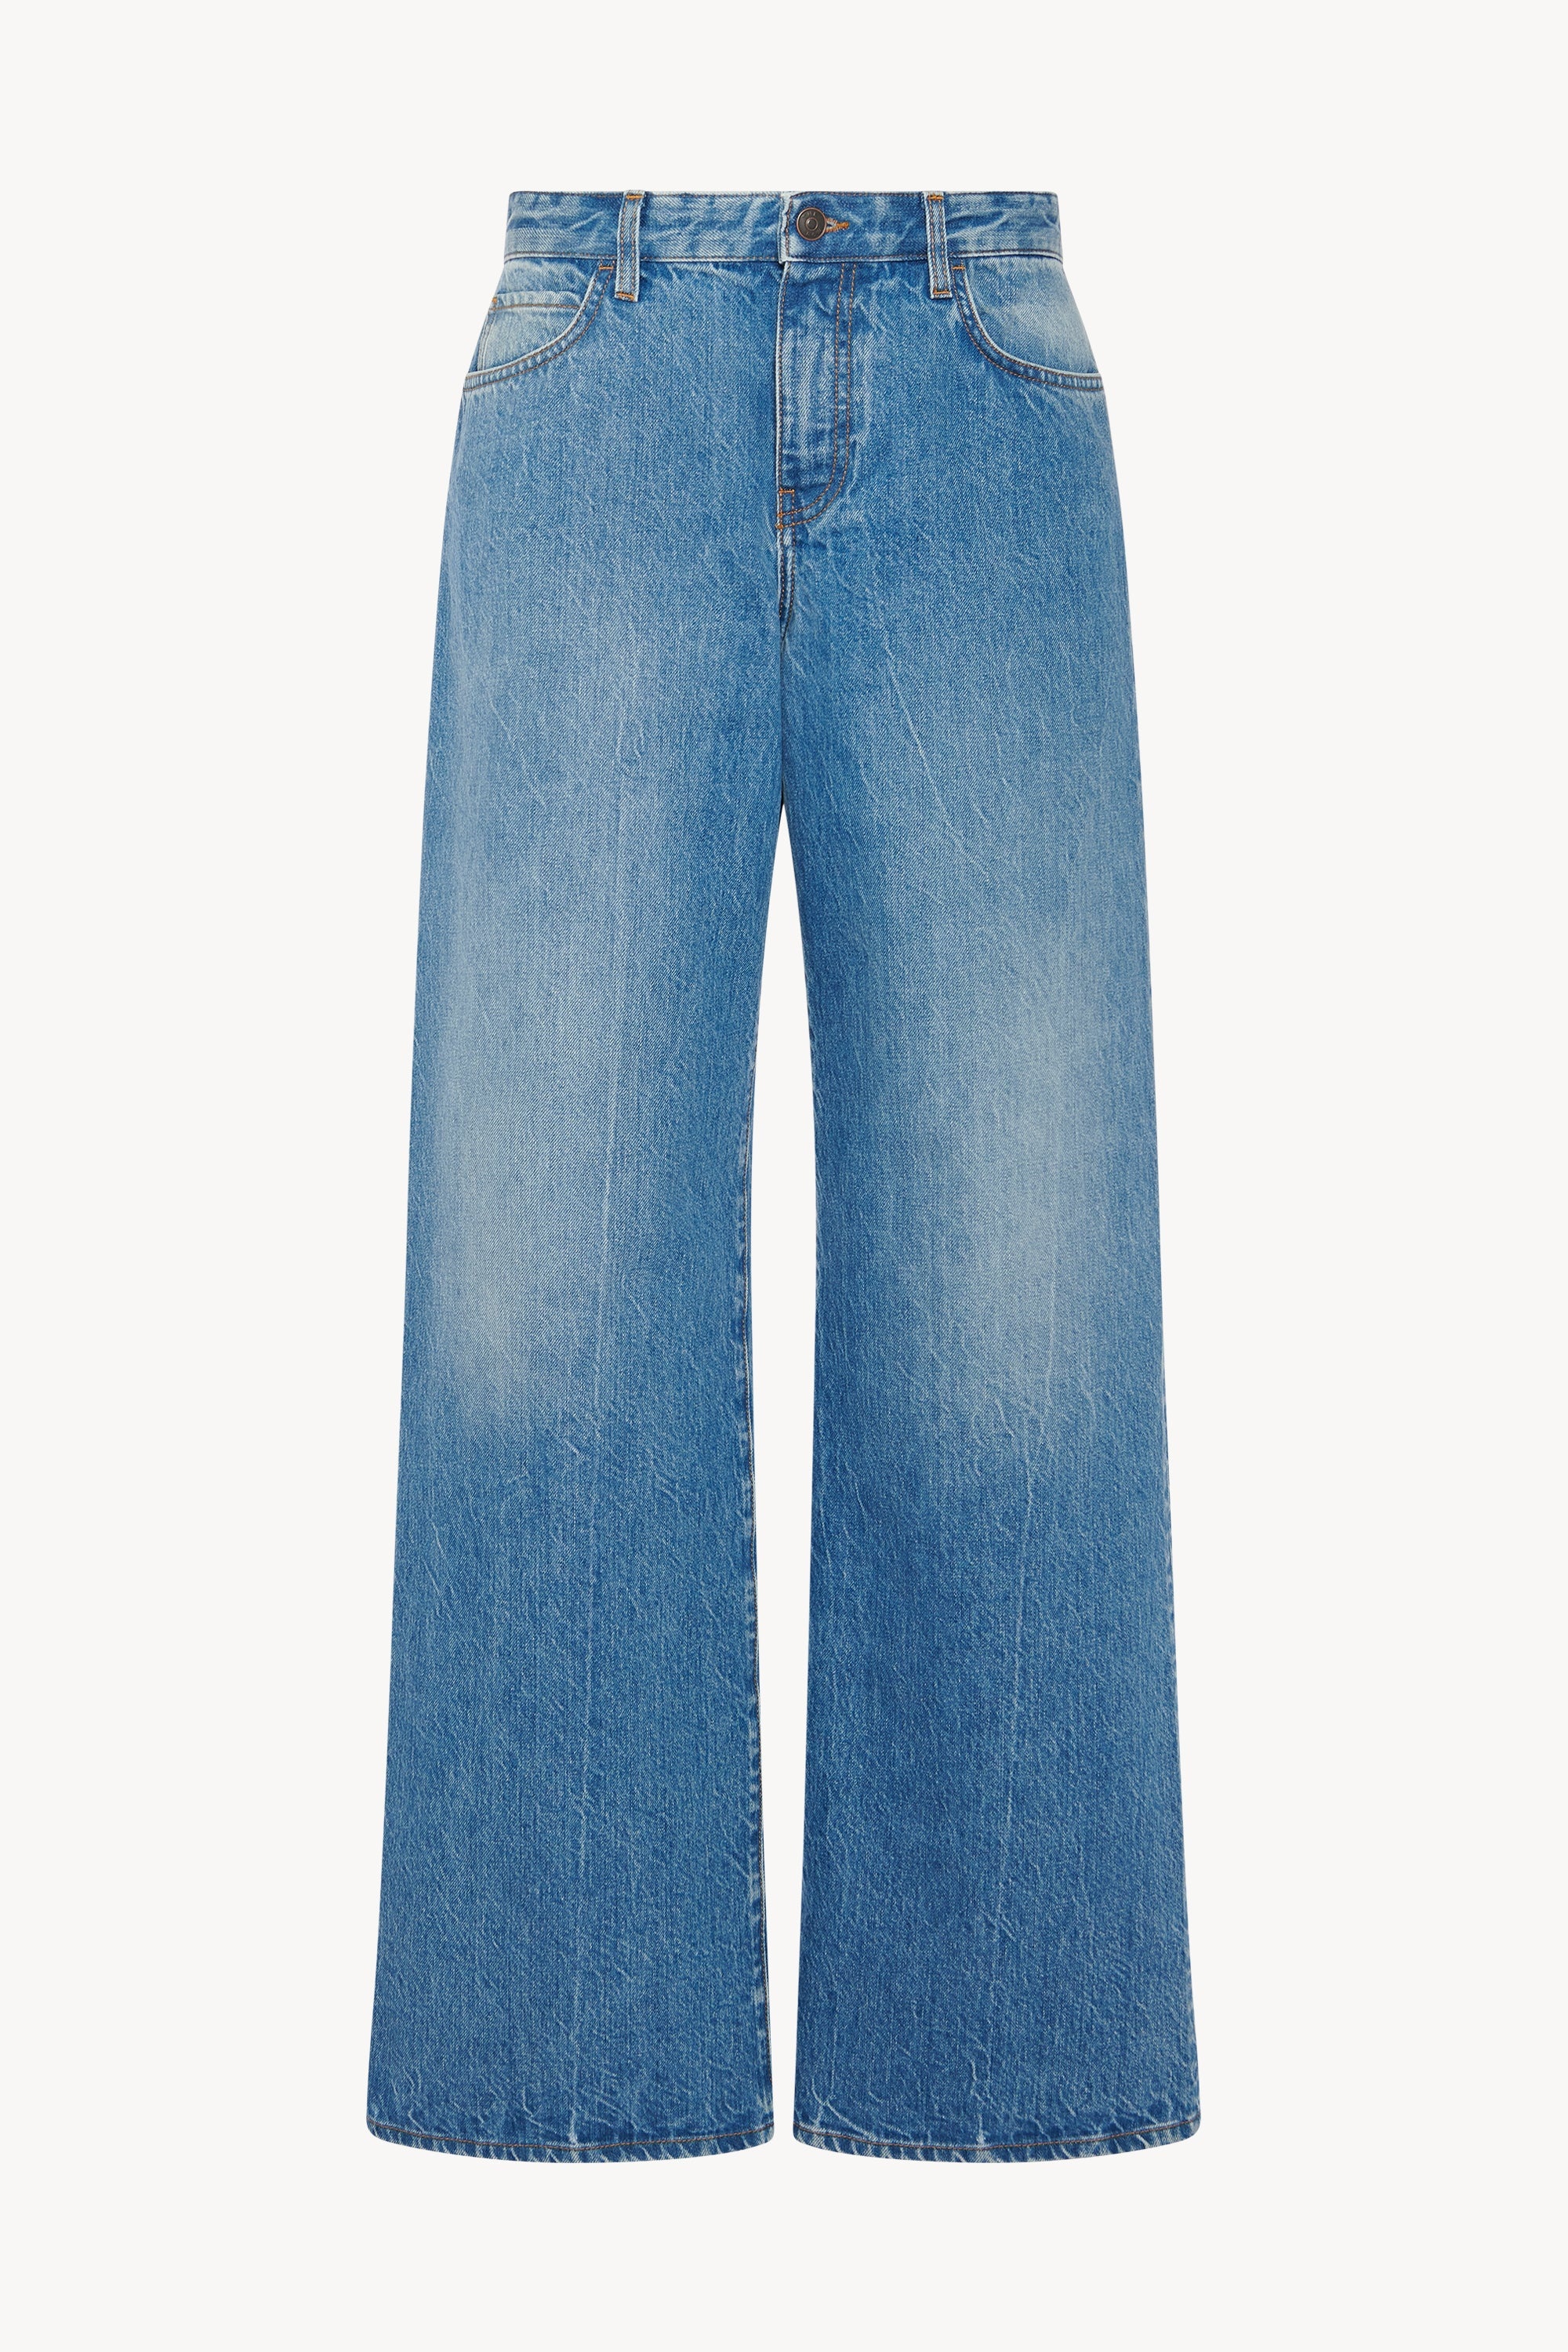 Eglitta Jeans in Cotton - 1